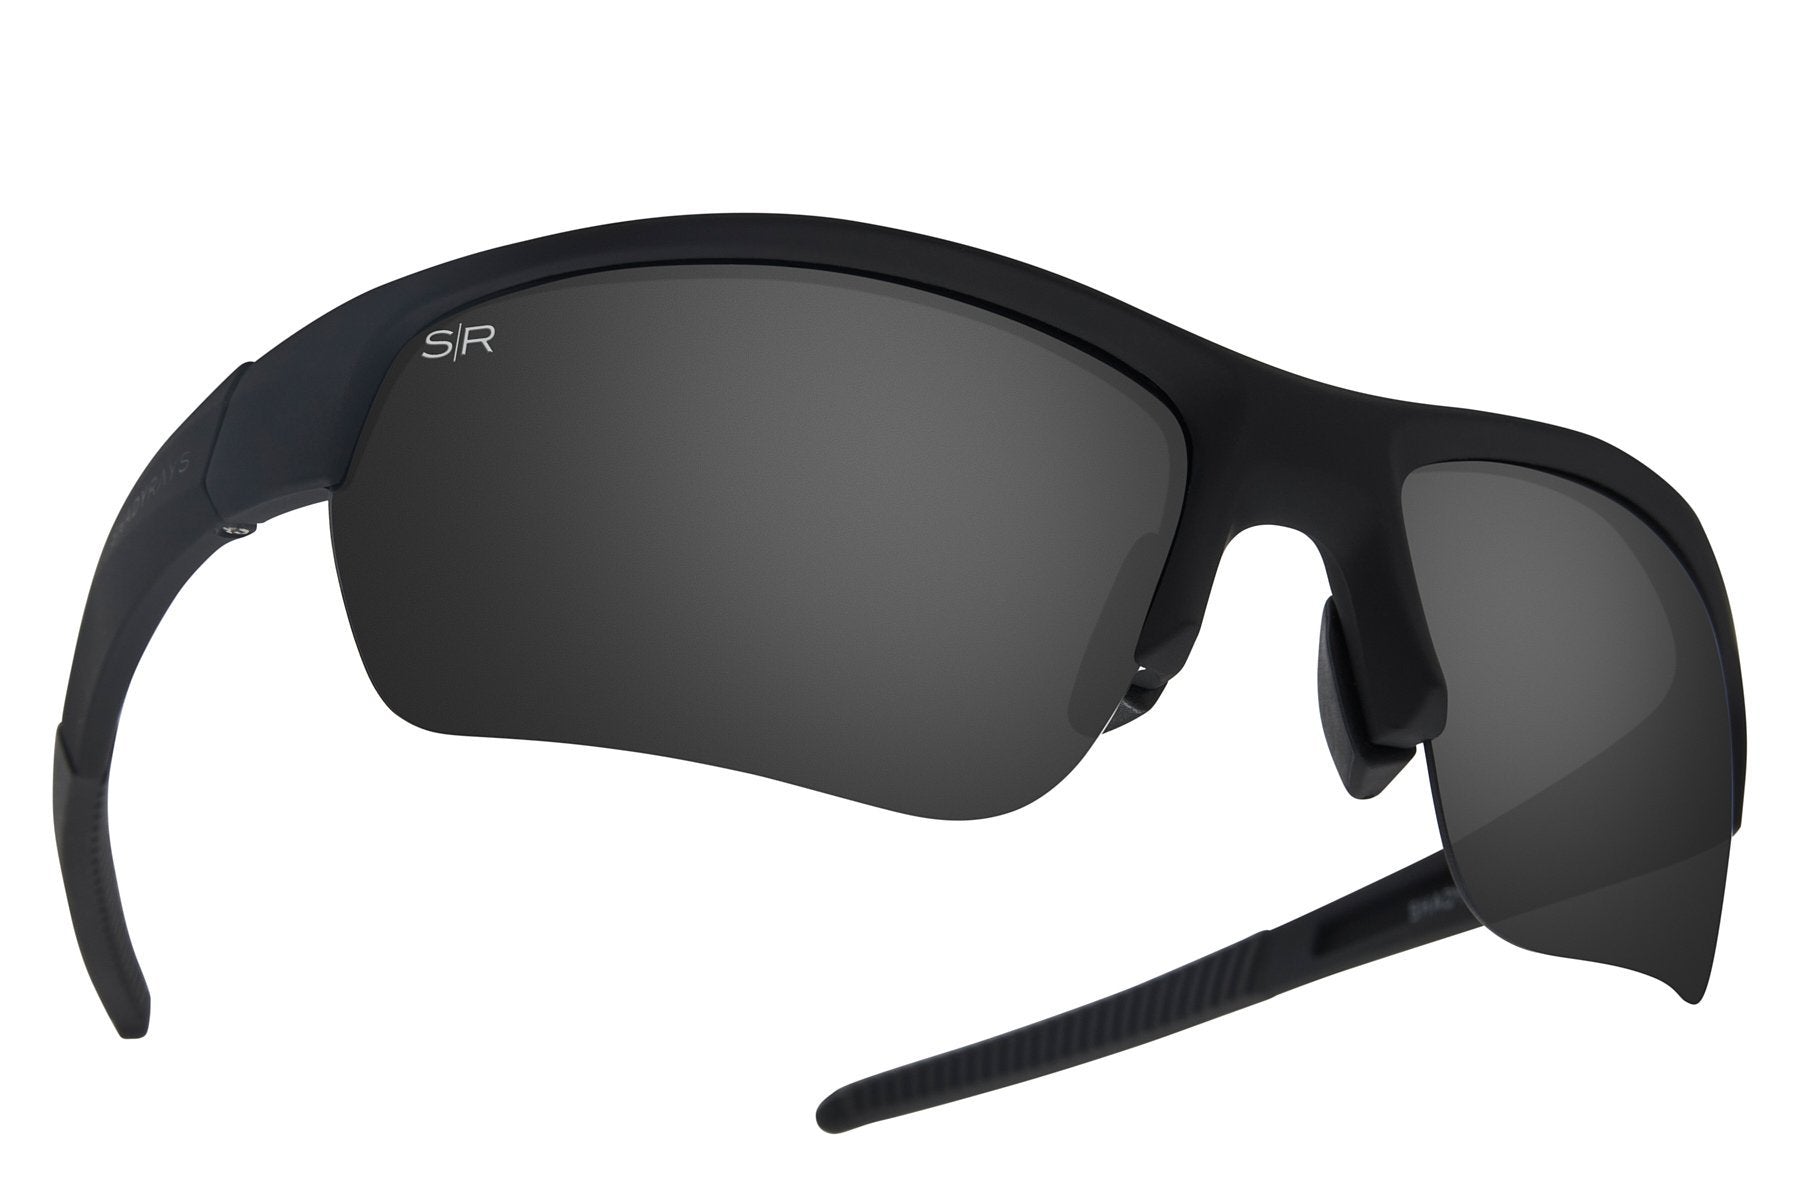 Polarized Sunglasses For Men, Men's Sunglasses For Sports, Driving,  Fishing, Golf, Running, Work, Large